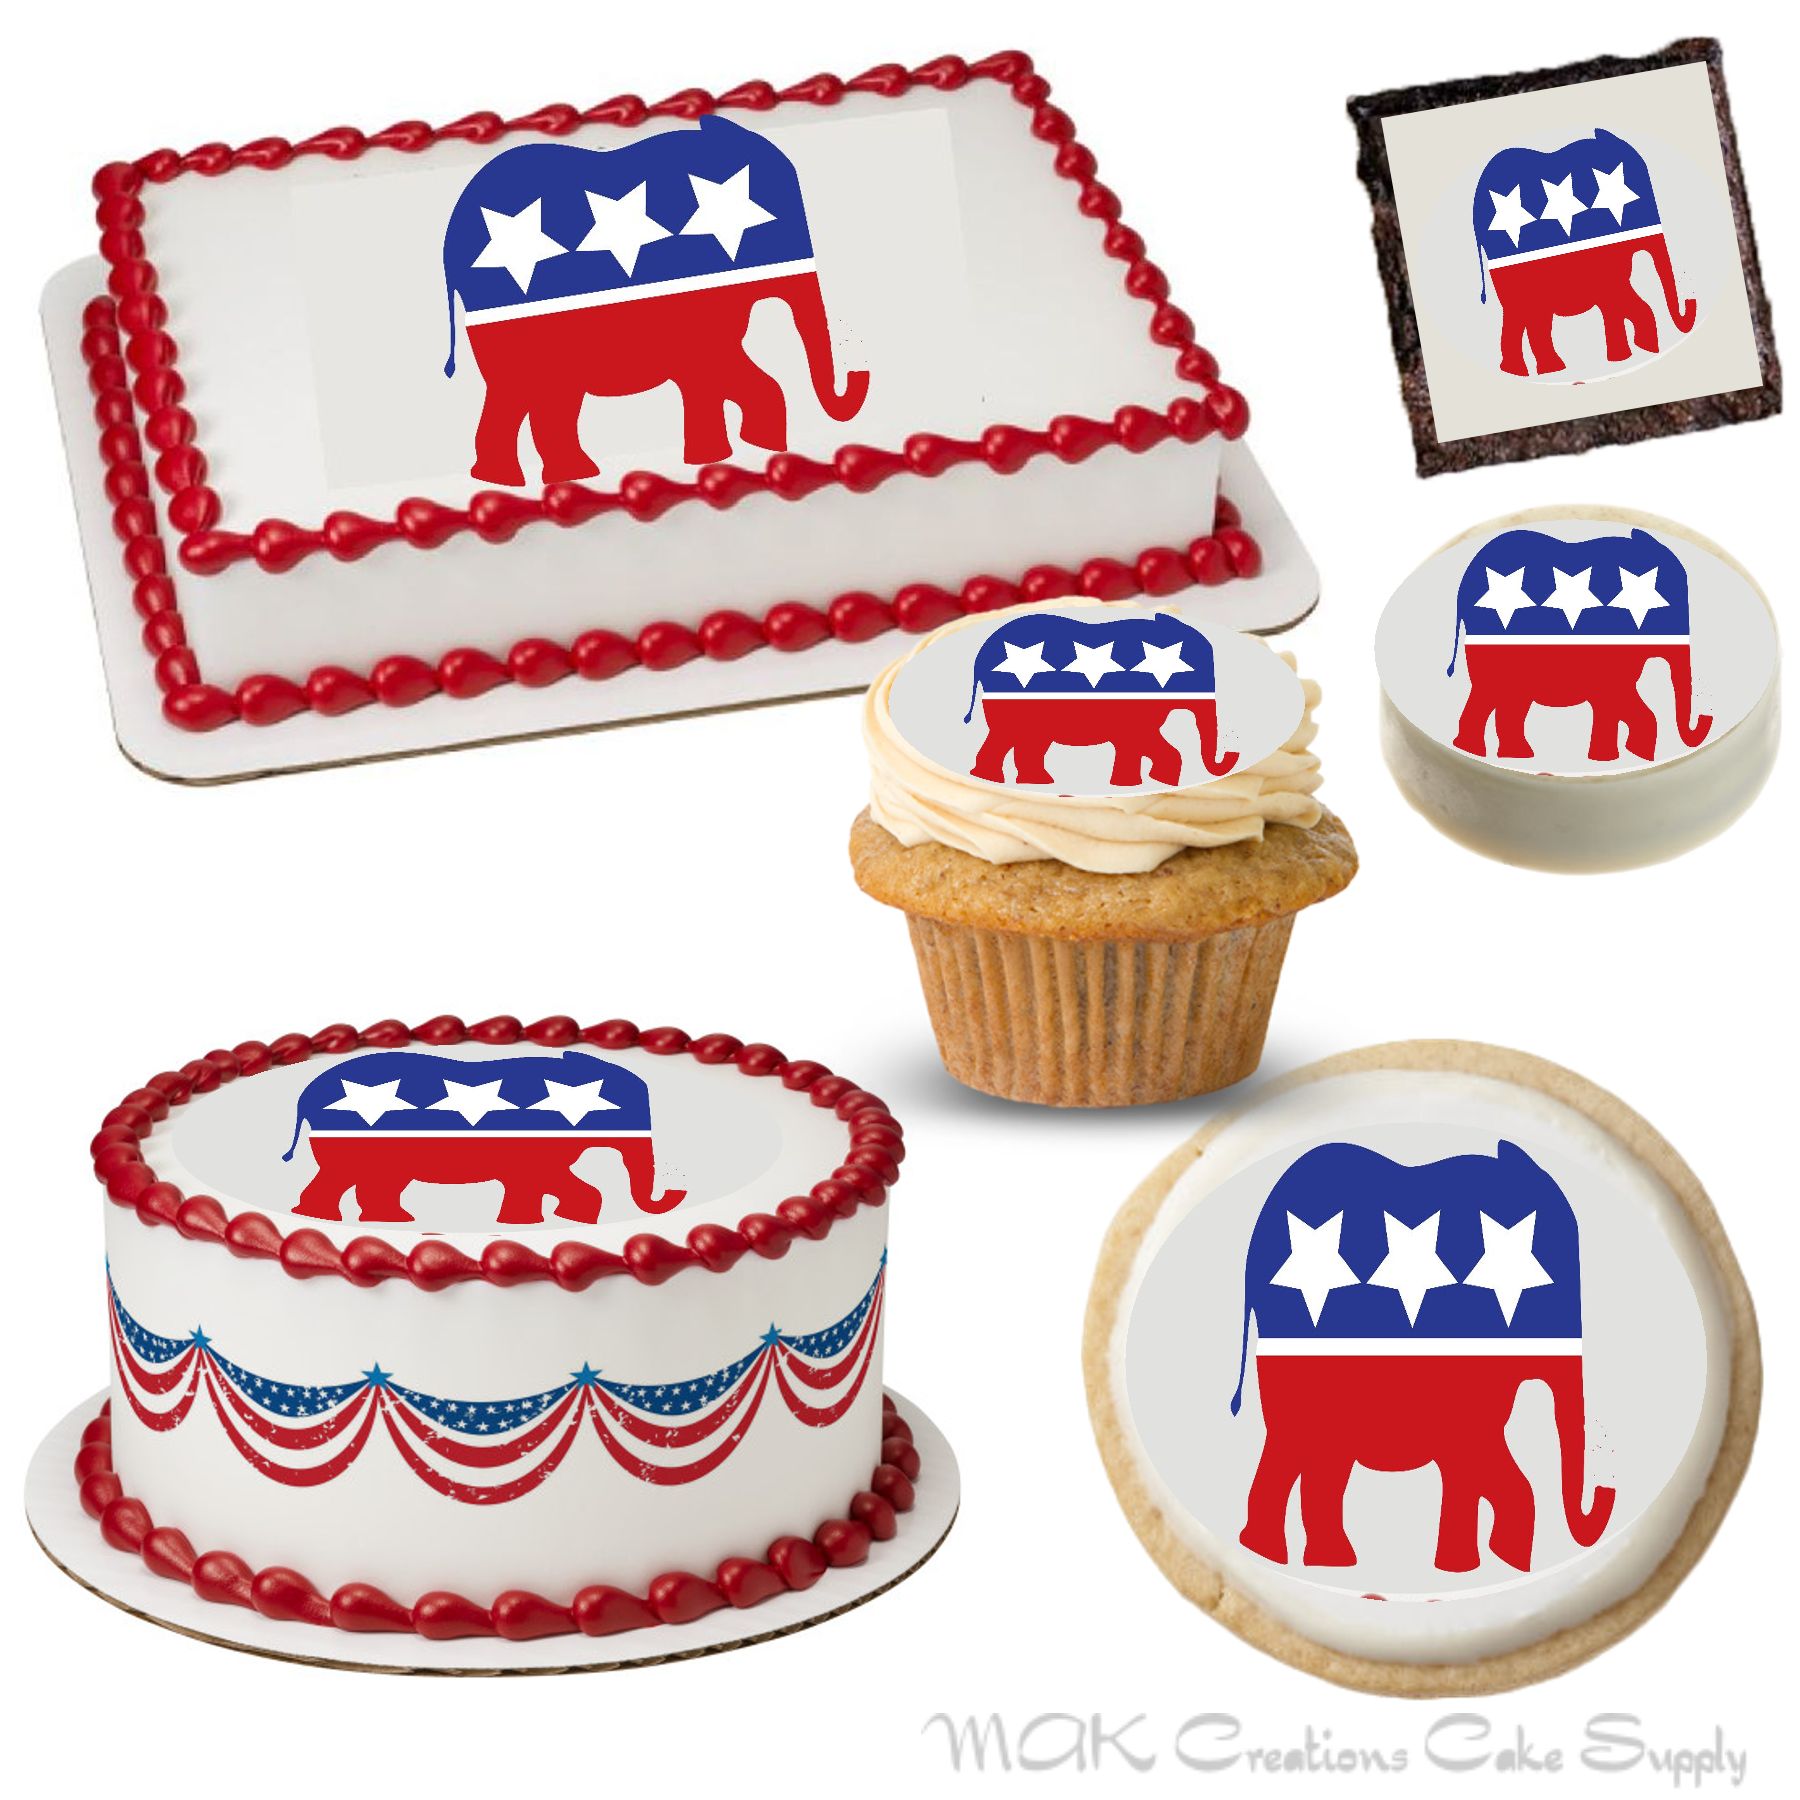 Patriotic Fanfare Cake Design  DecoPac